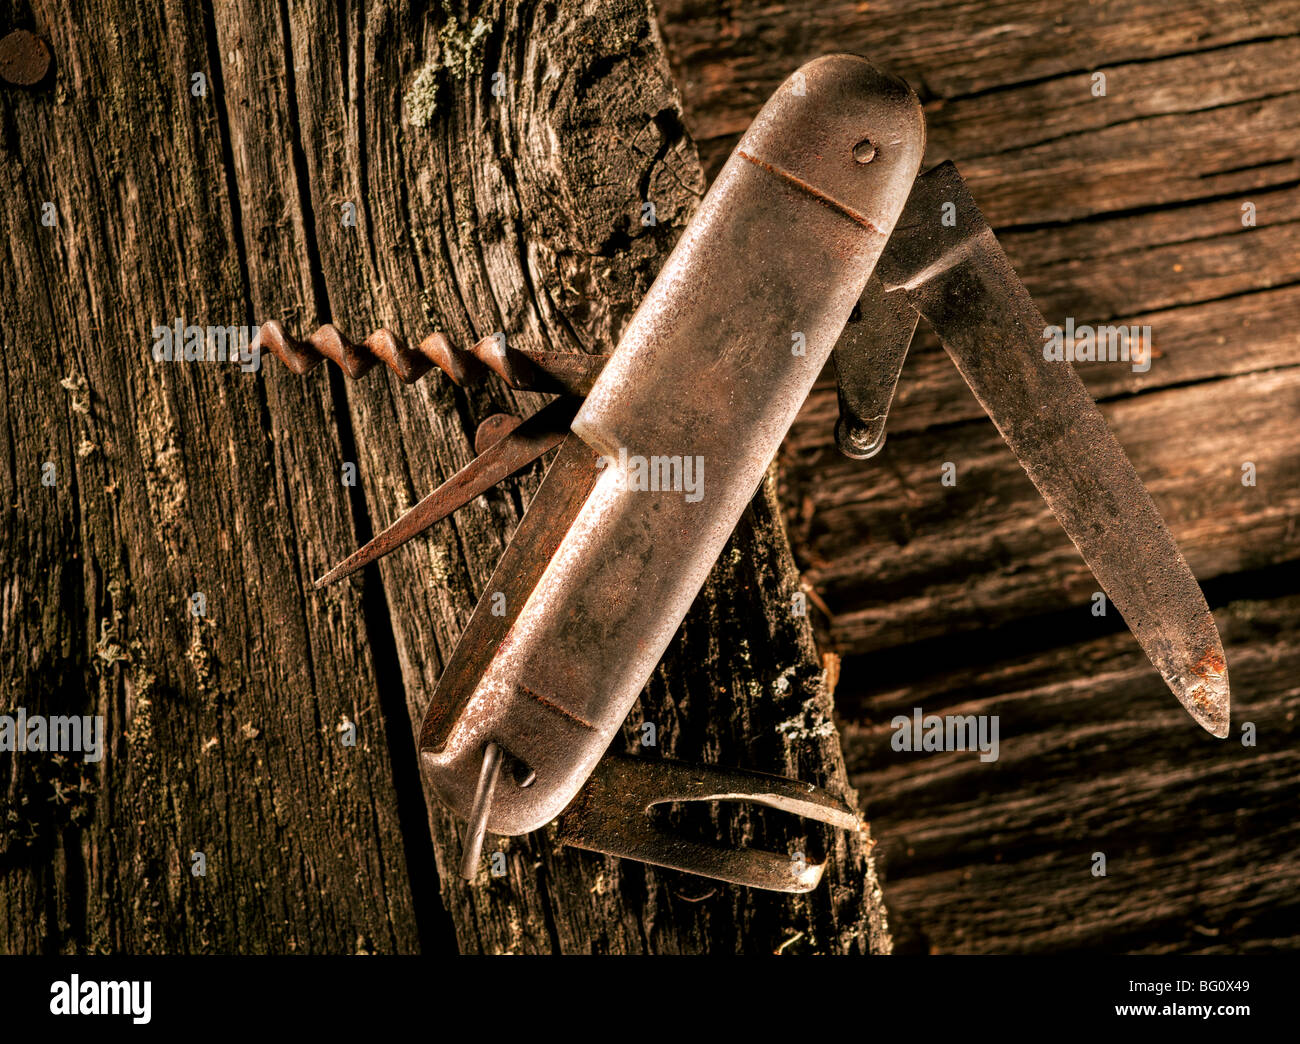 Rusty pocket knife Stock Photo